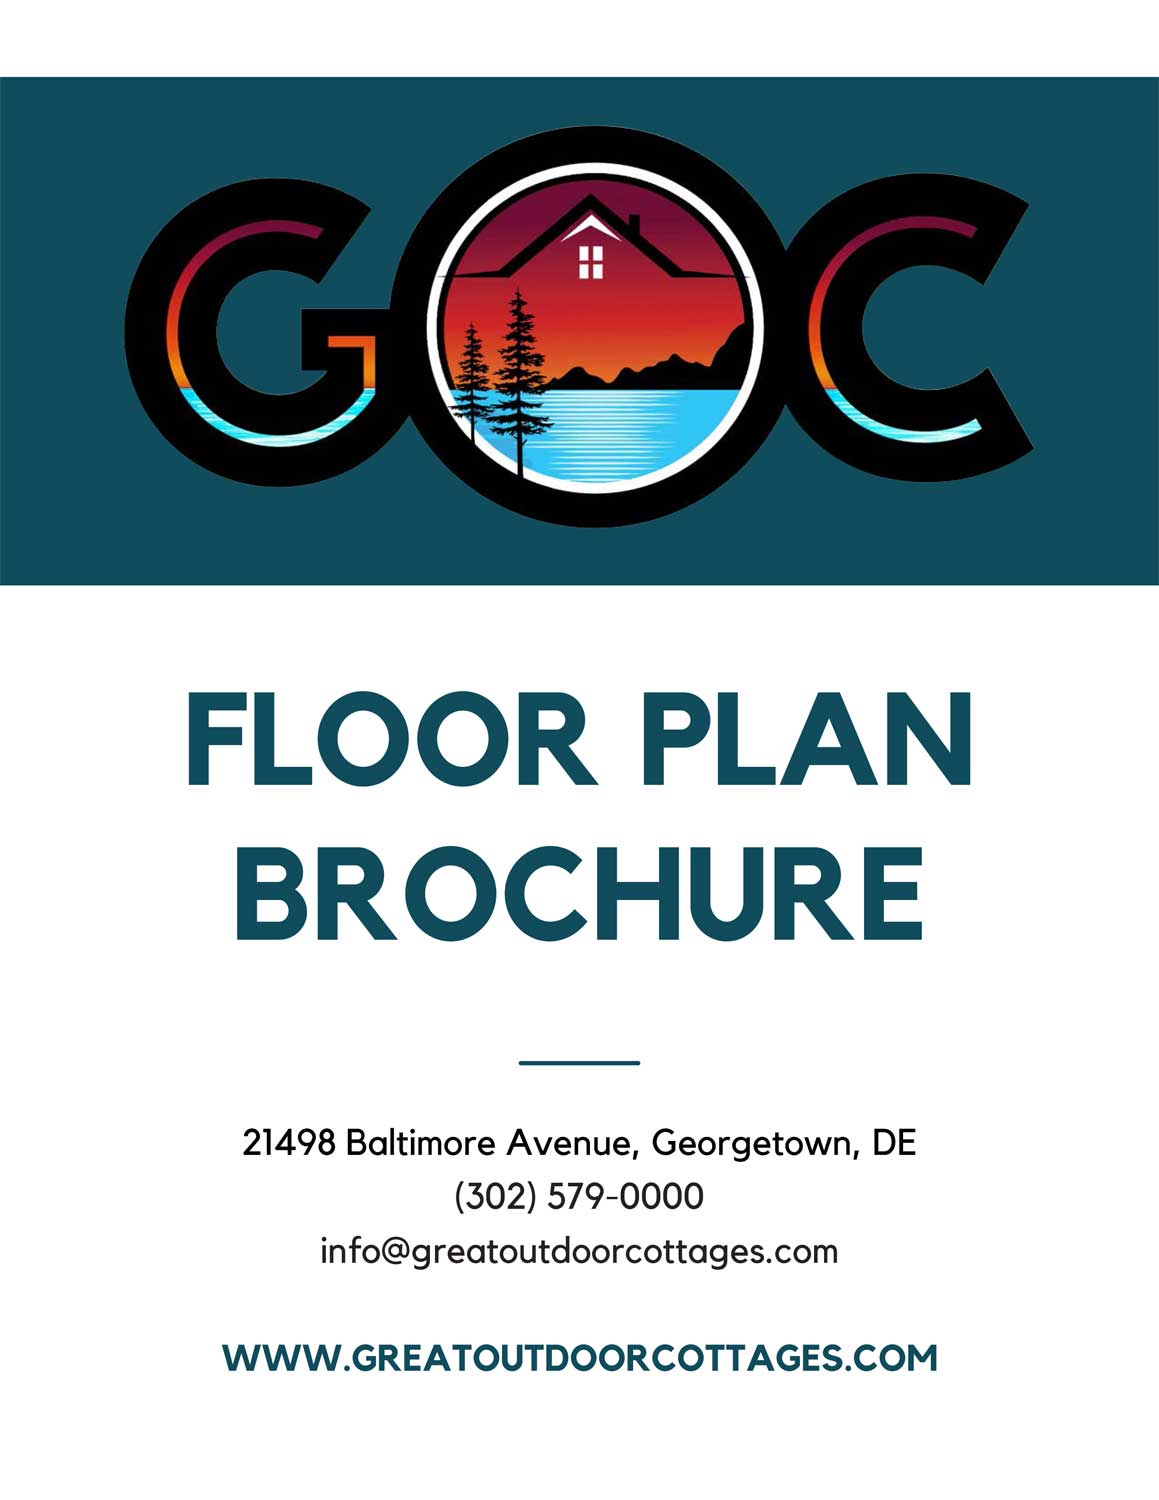 GOC-Floor-Plan-Brochure